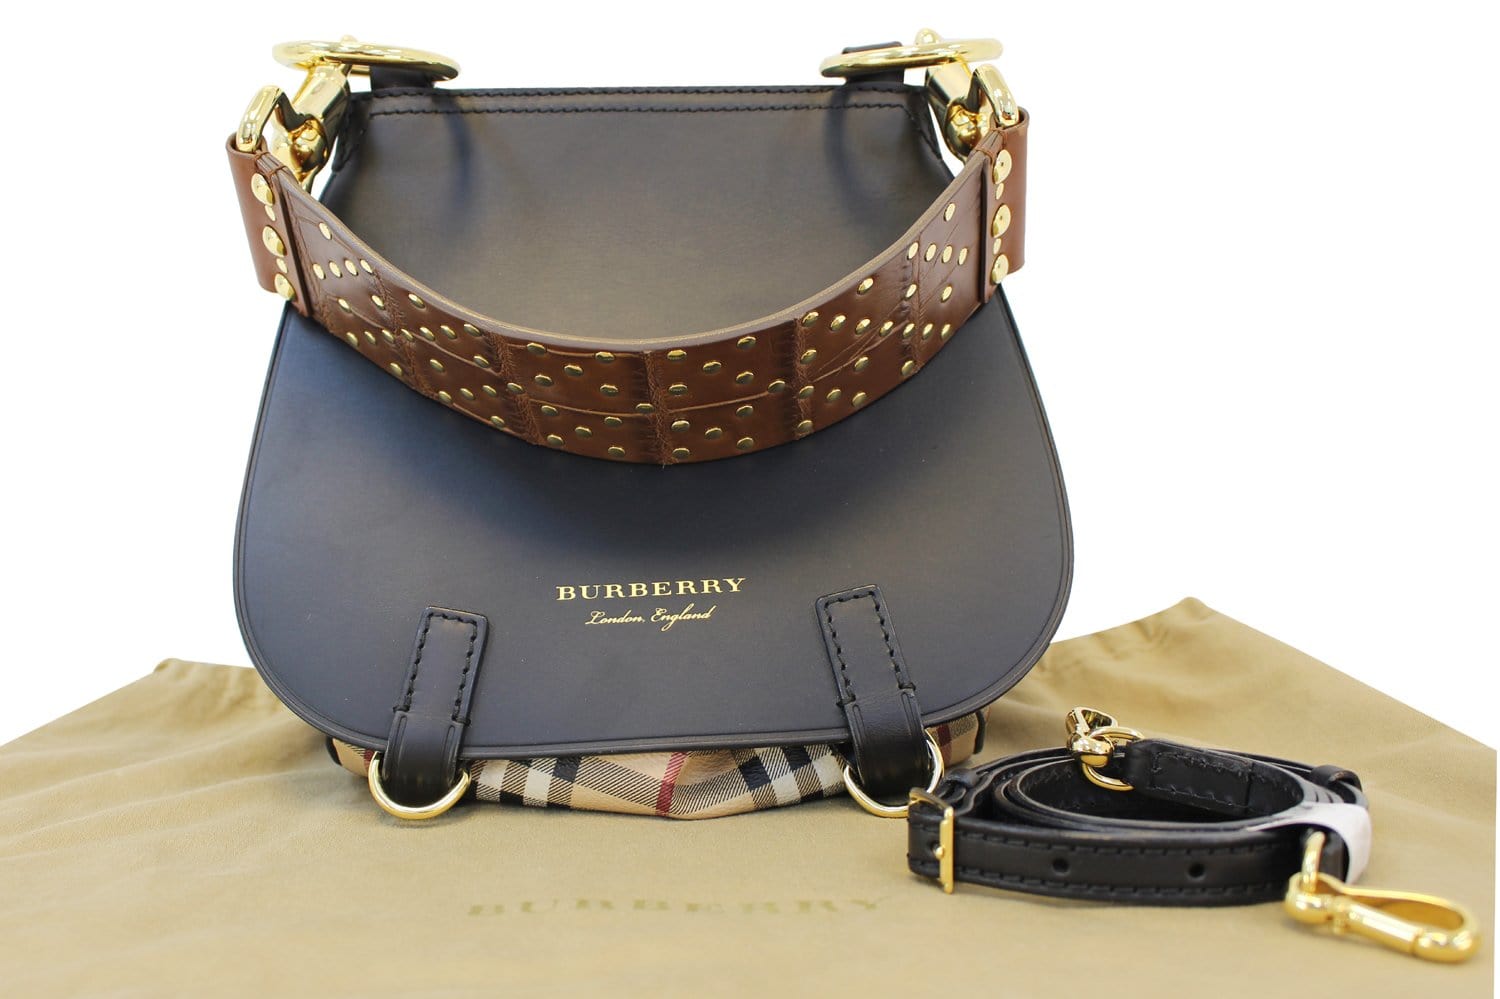 Burberry Bridle Handbag